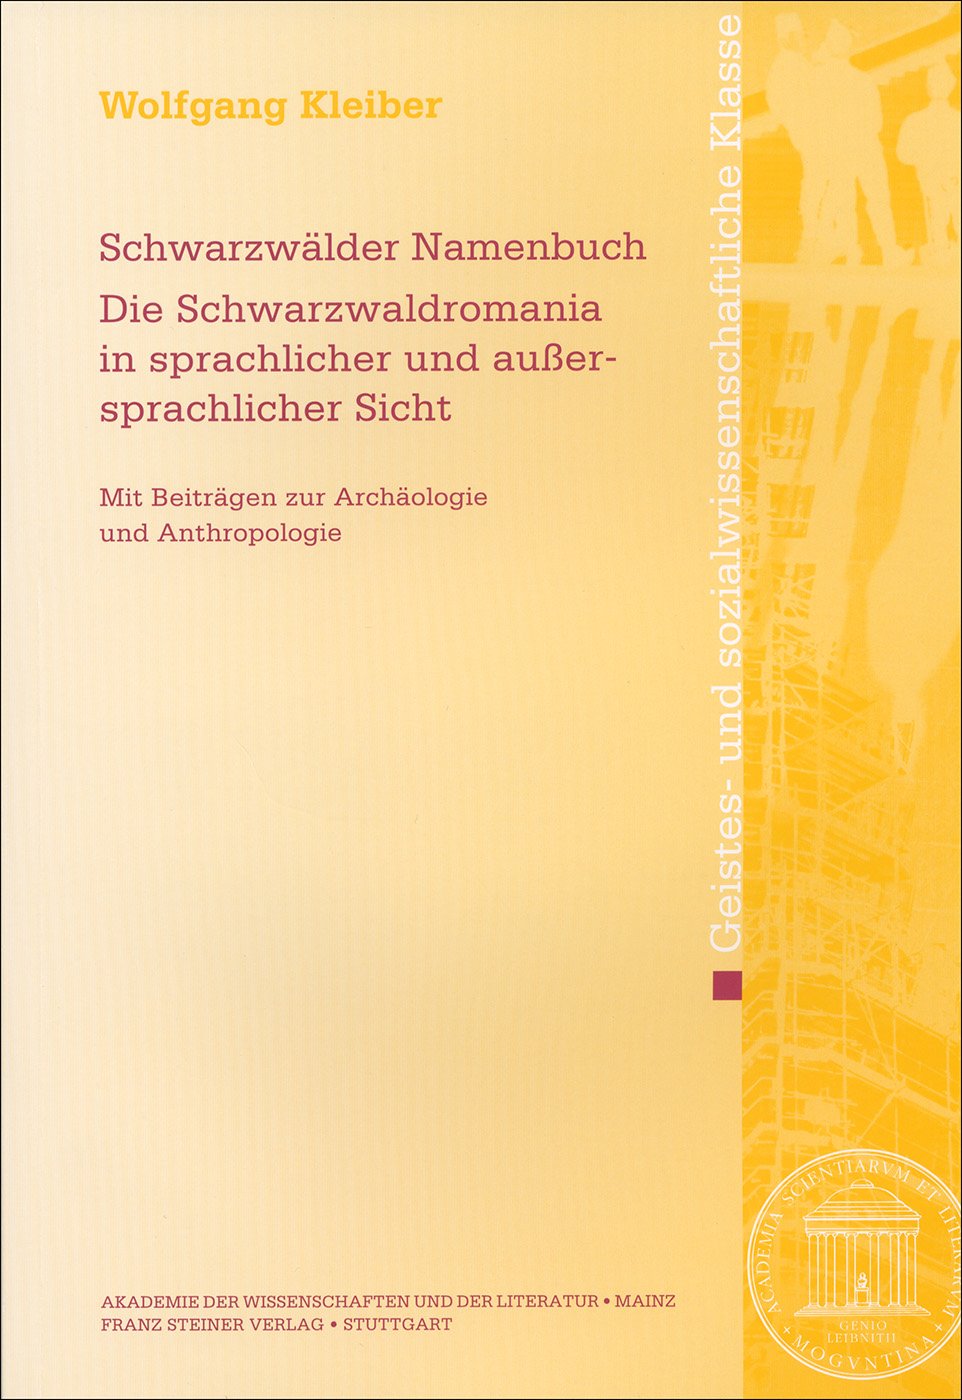 Schwarzwälder Namenbuch.Die Schwarzwaldromania in sprachlicher und außersprachlicher Sicht